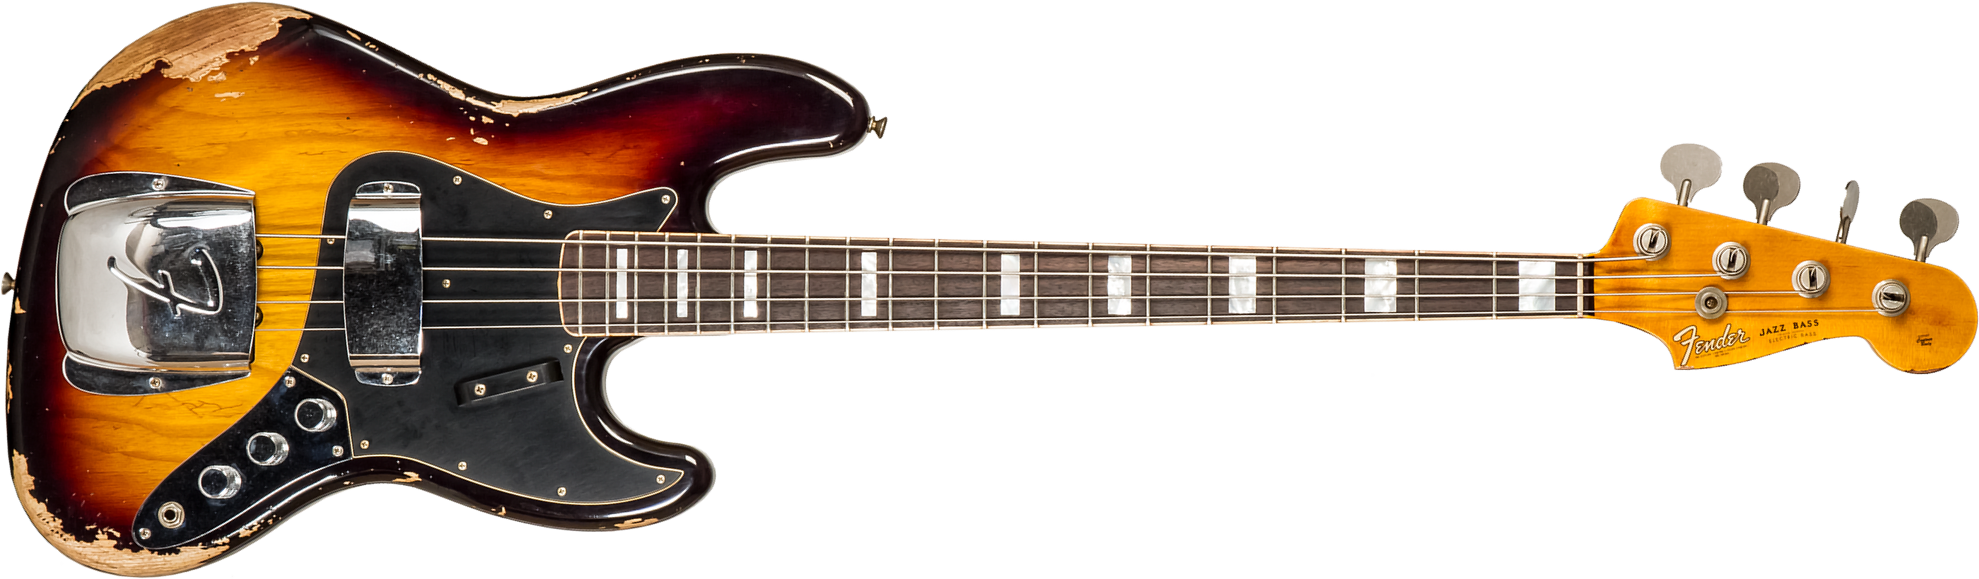 Fender Custom Shop Jazz Bass Custom Rw #cz575919 - Heavy Relic 3-color Sunburst - Basse Électrique Solid Body - Main picture